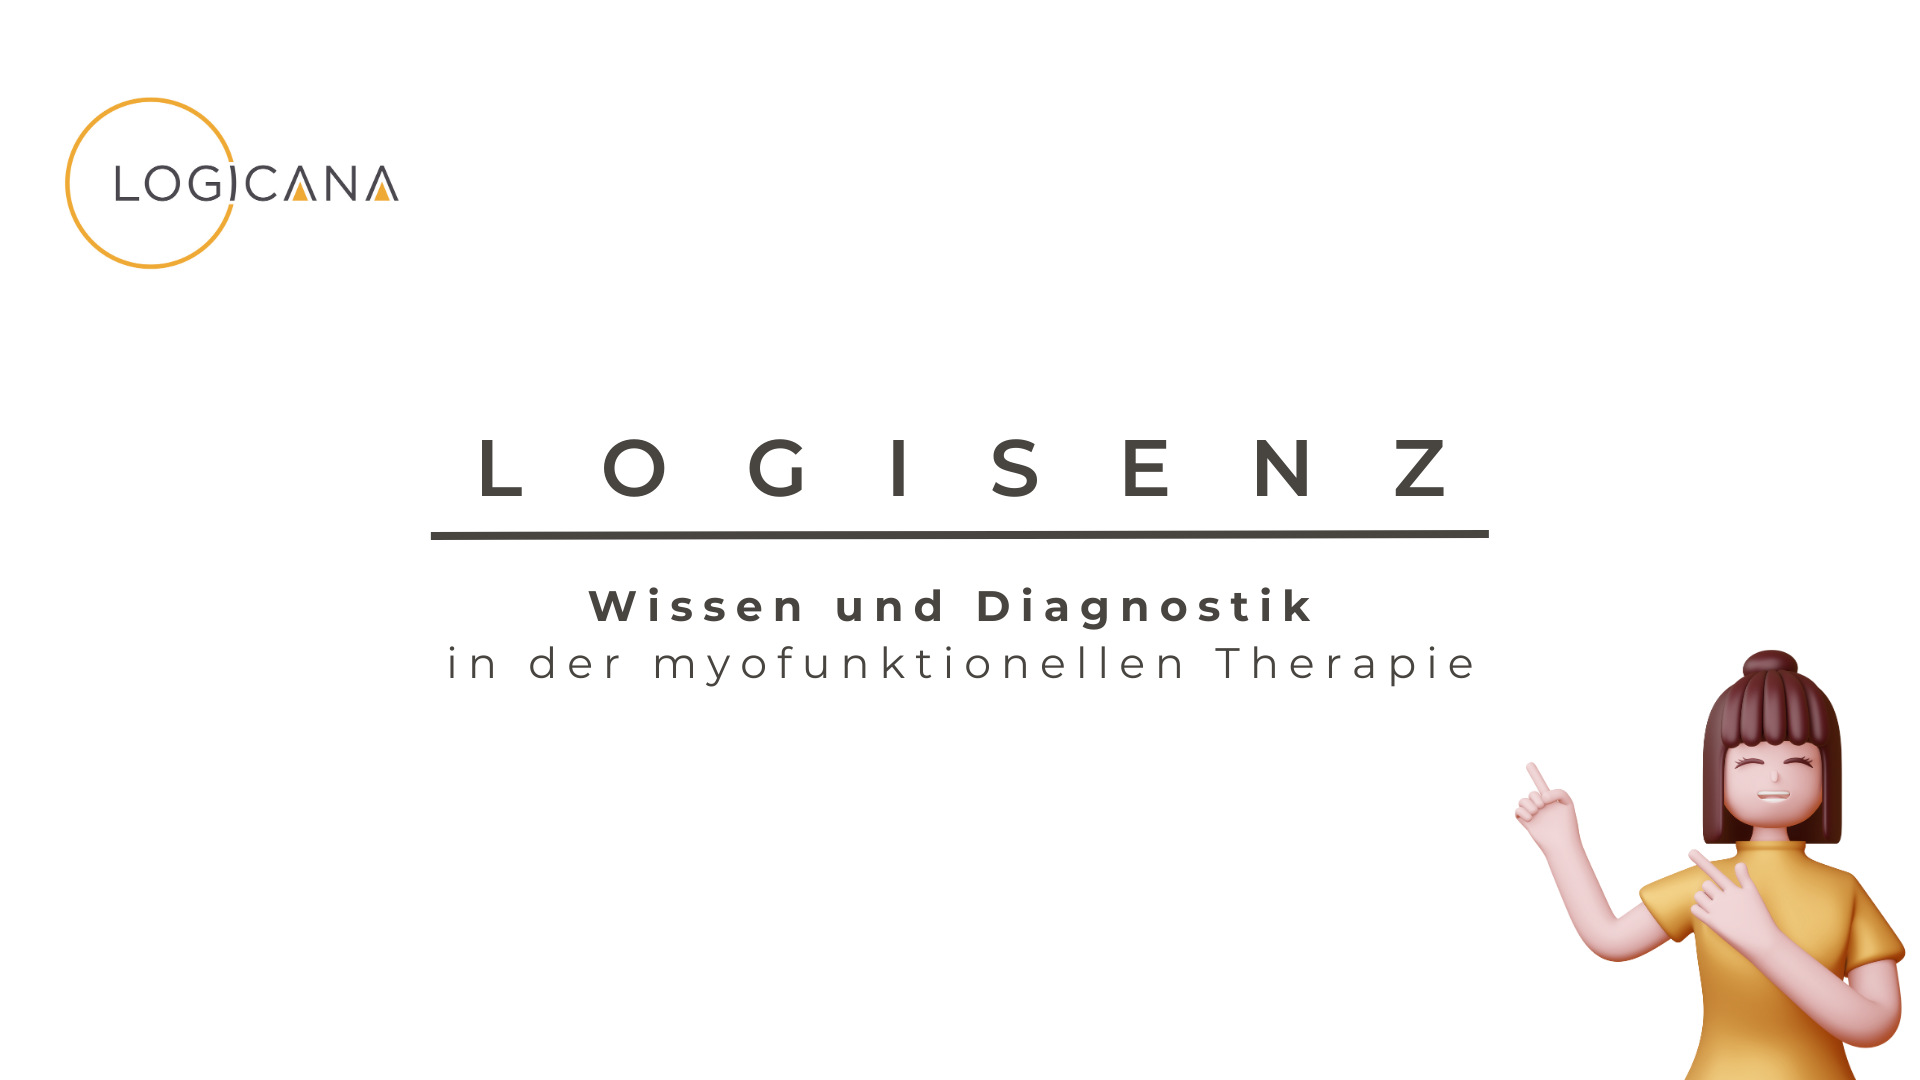 LOGISENZ - Diagnostik und Wissen in der myofunktionellen Therapie